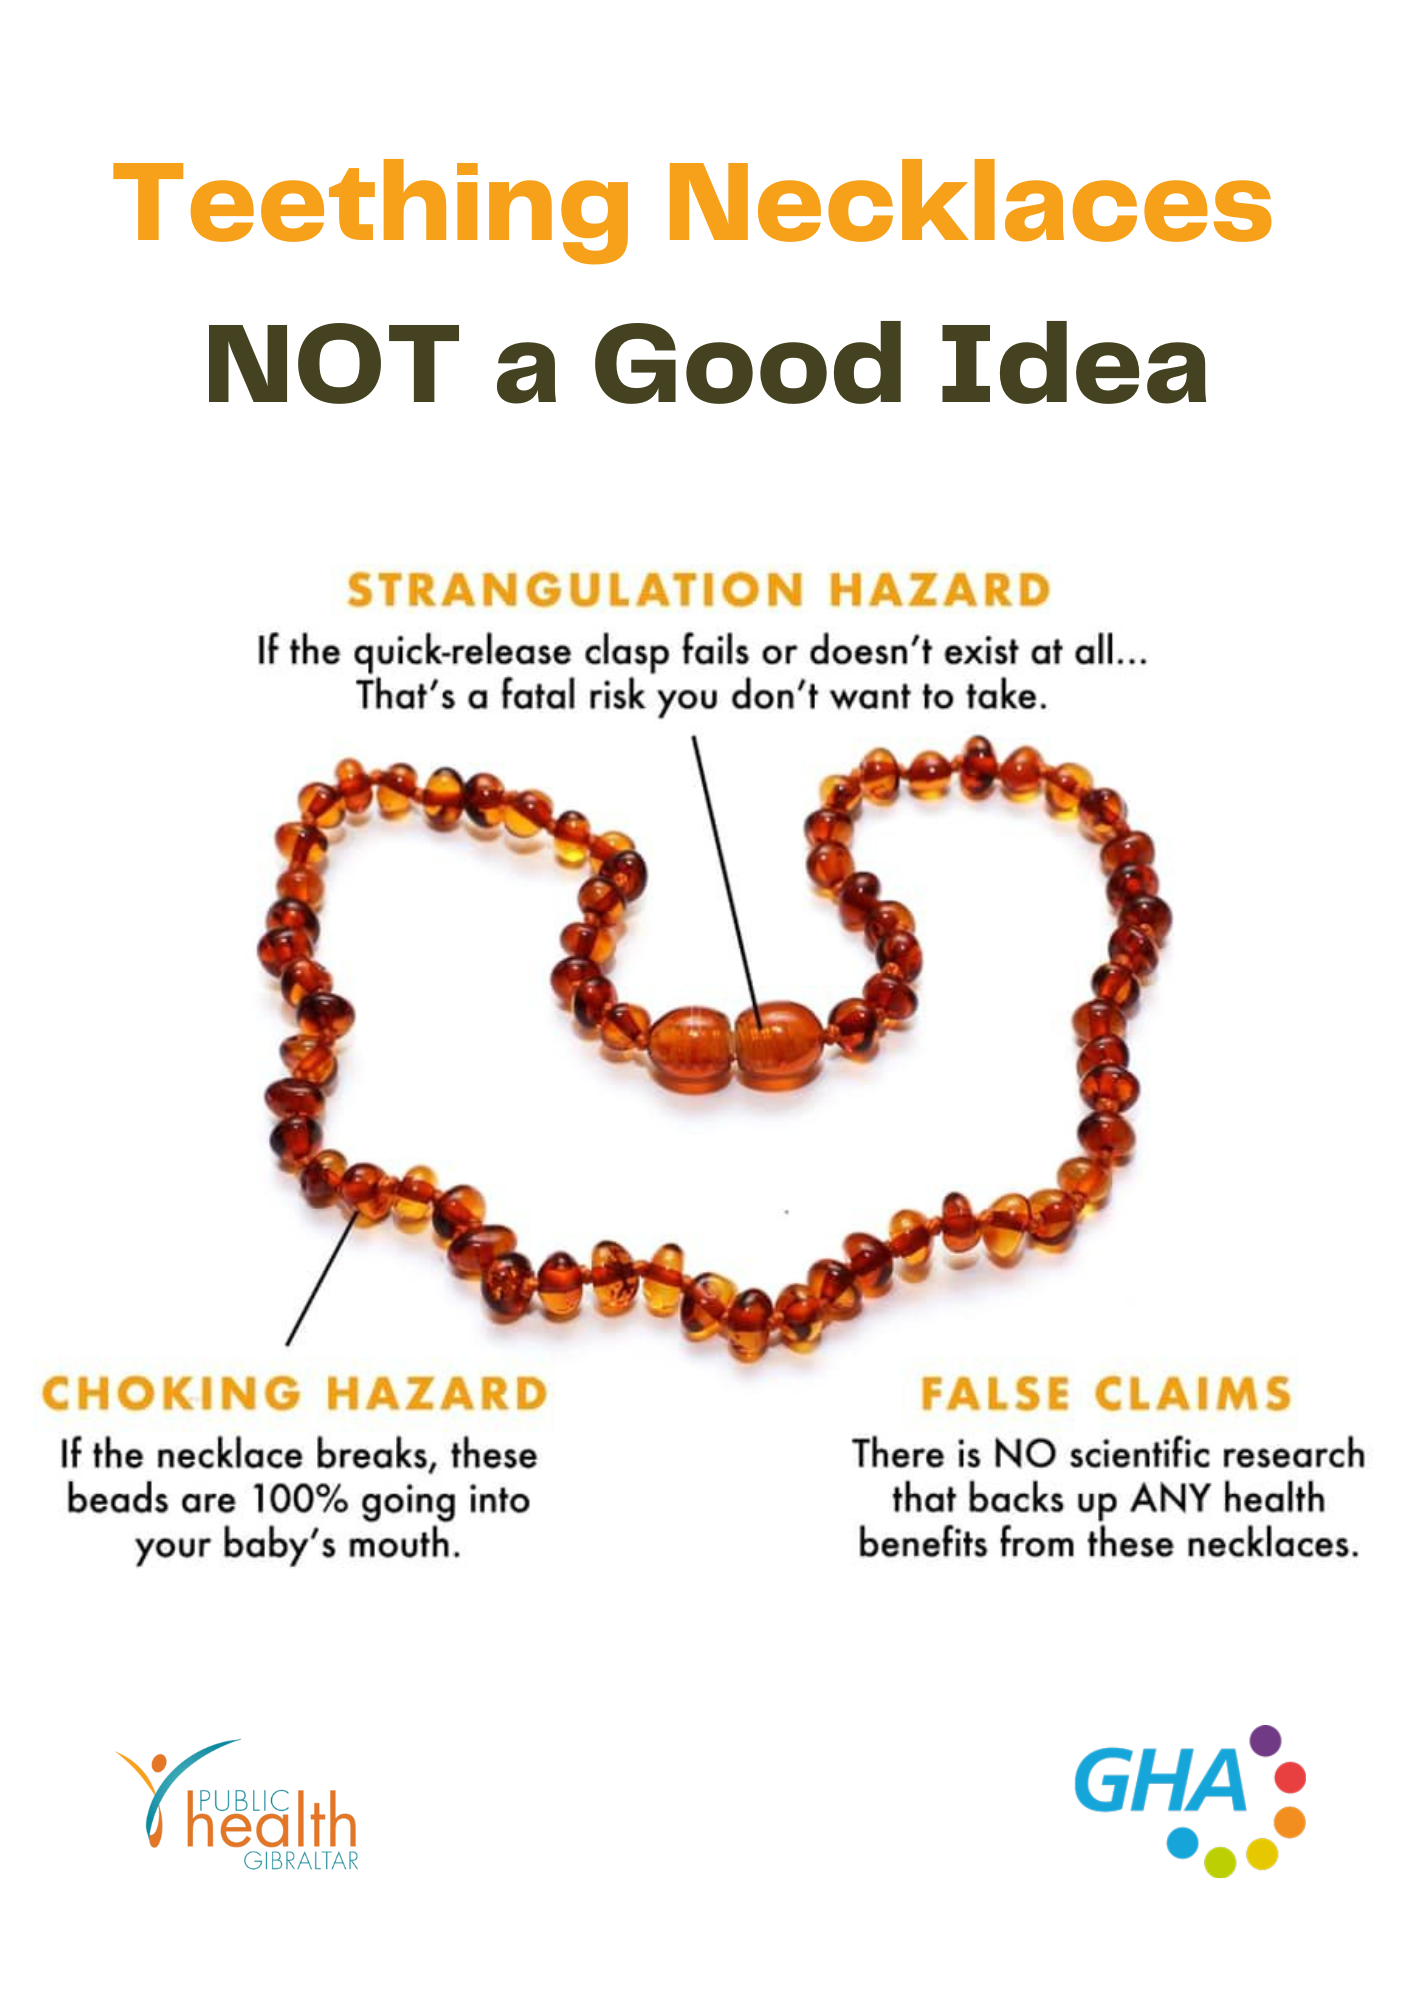 Public Health Warning: Teething Necklaces Image